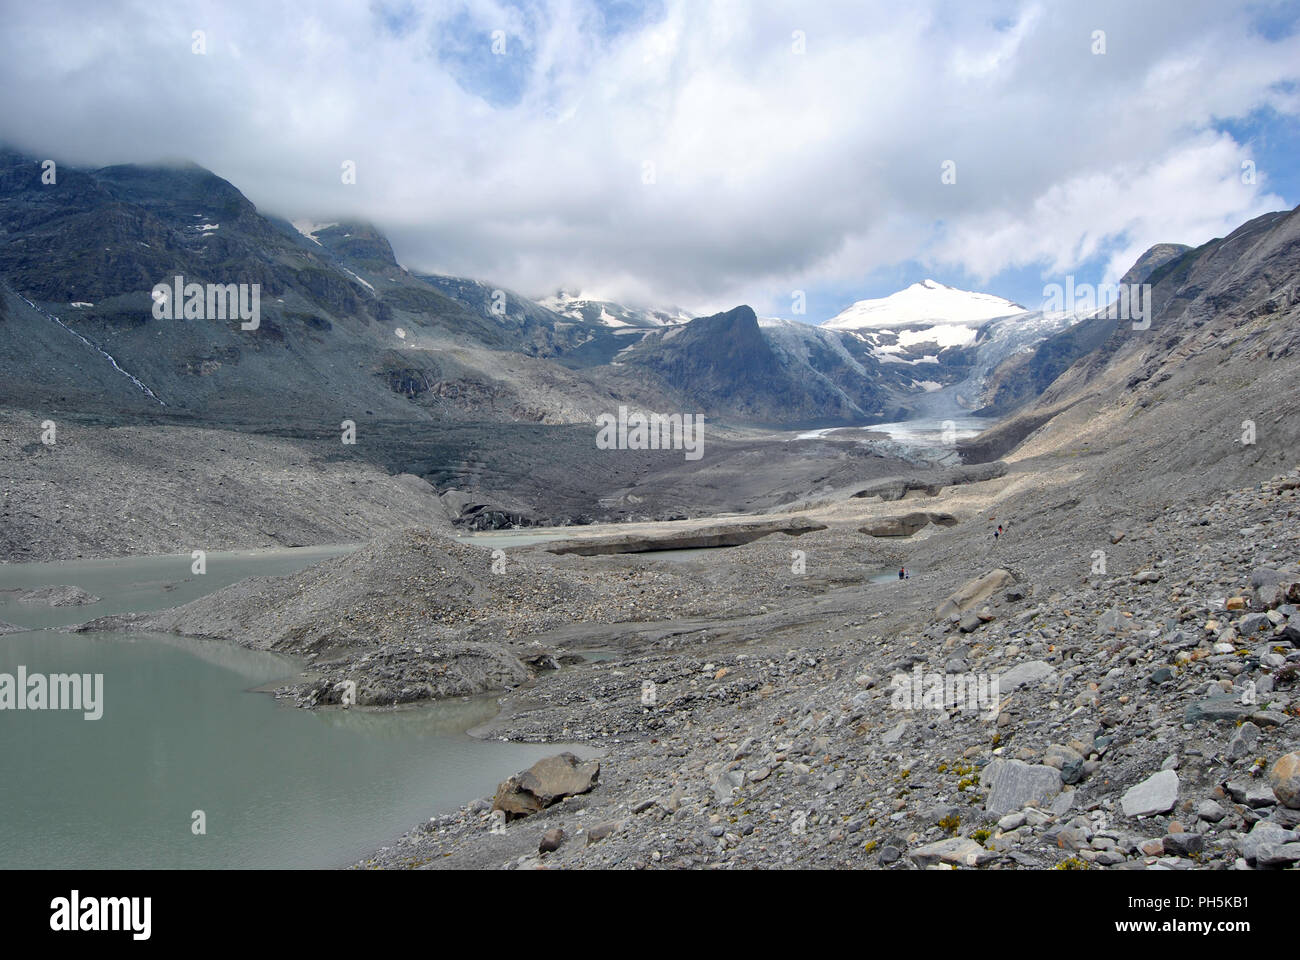 Austria, Pasterze glacier in the Gross Glockner range Stock Photo